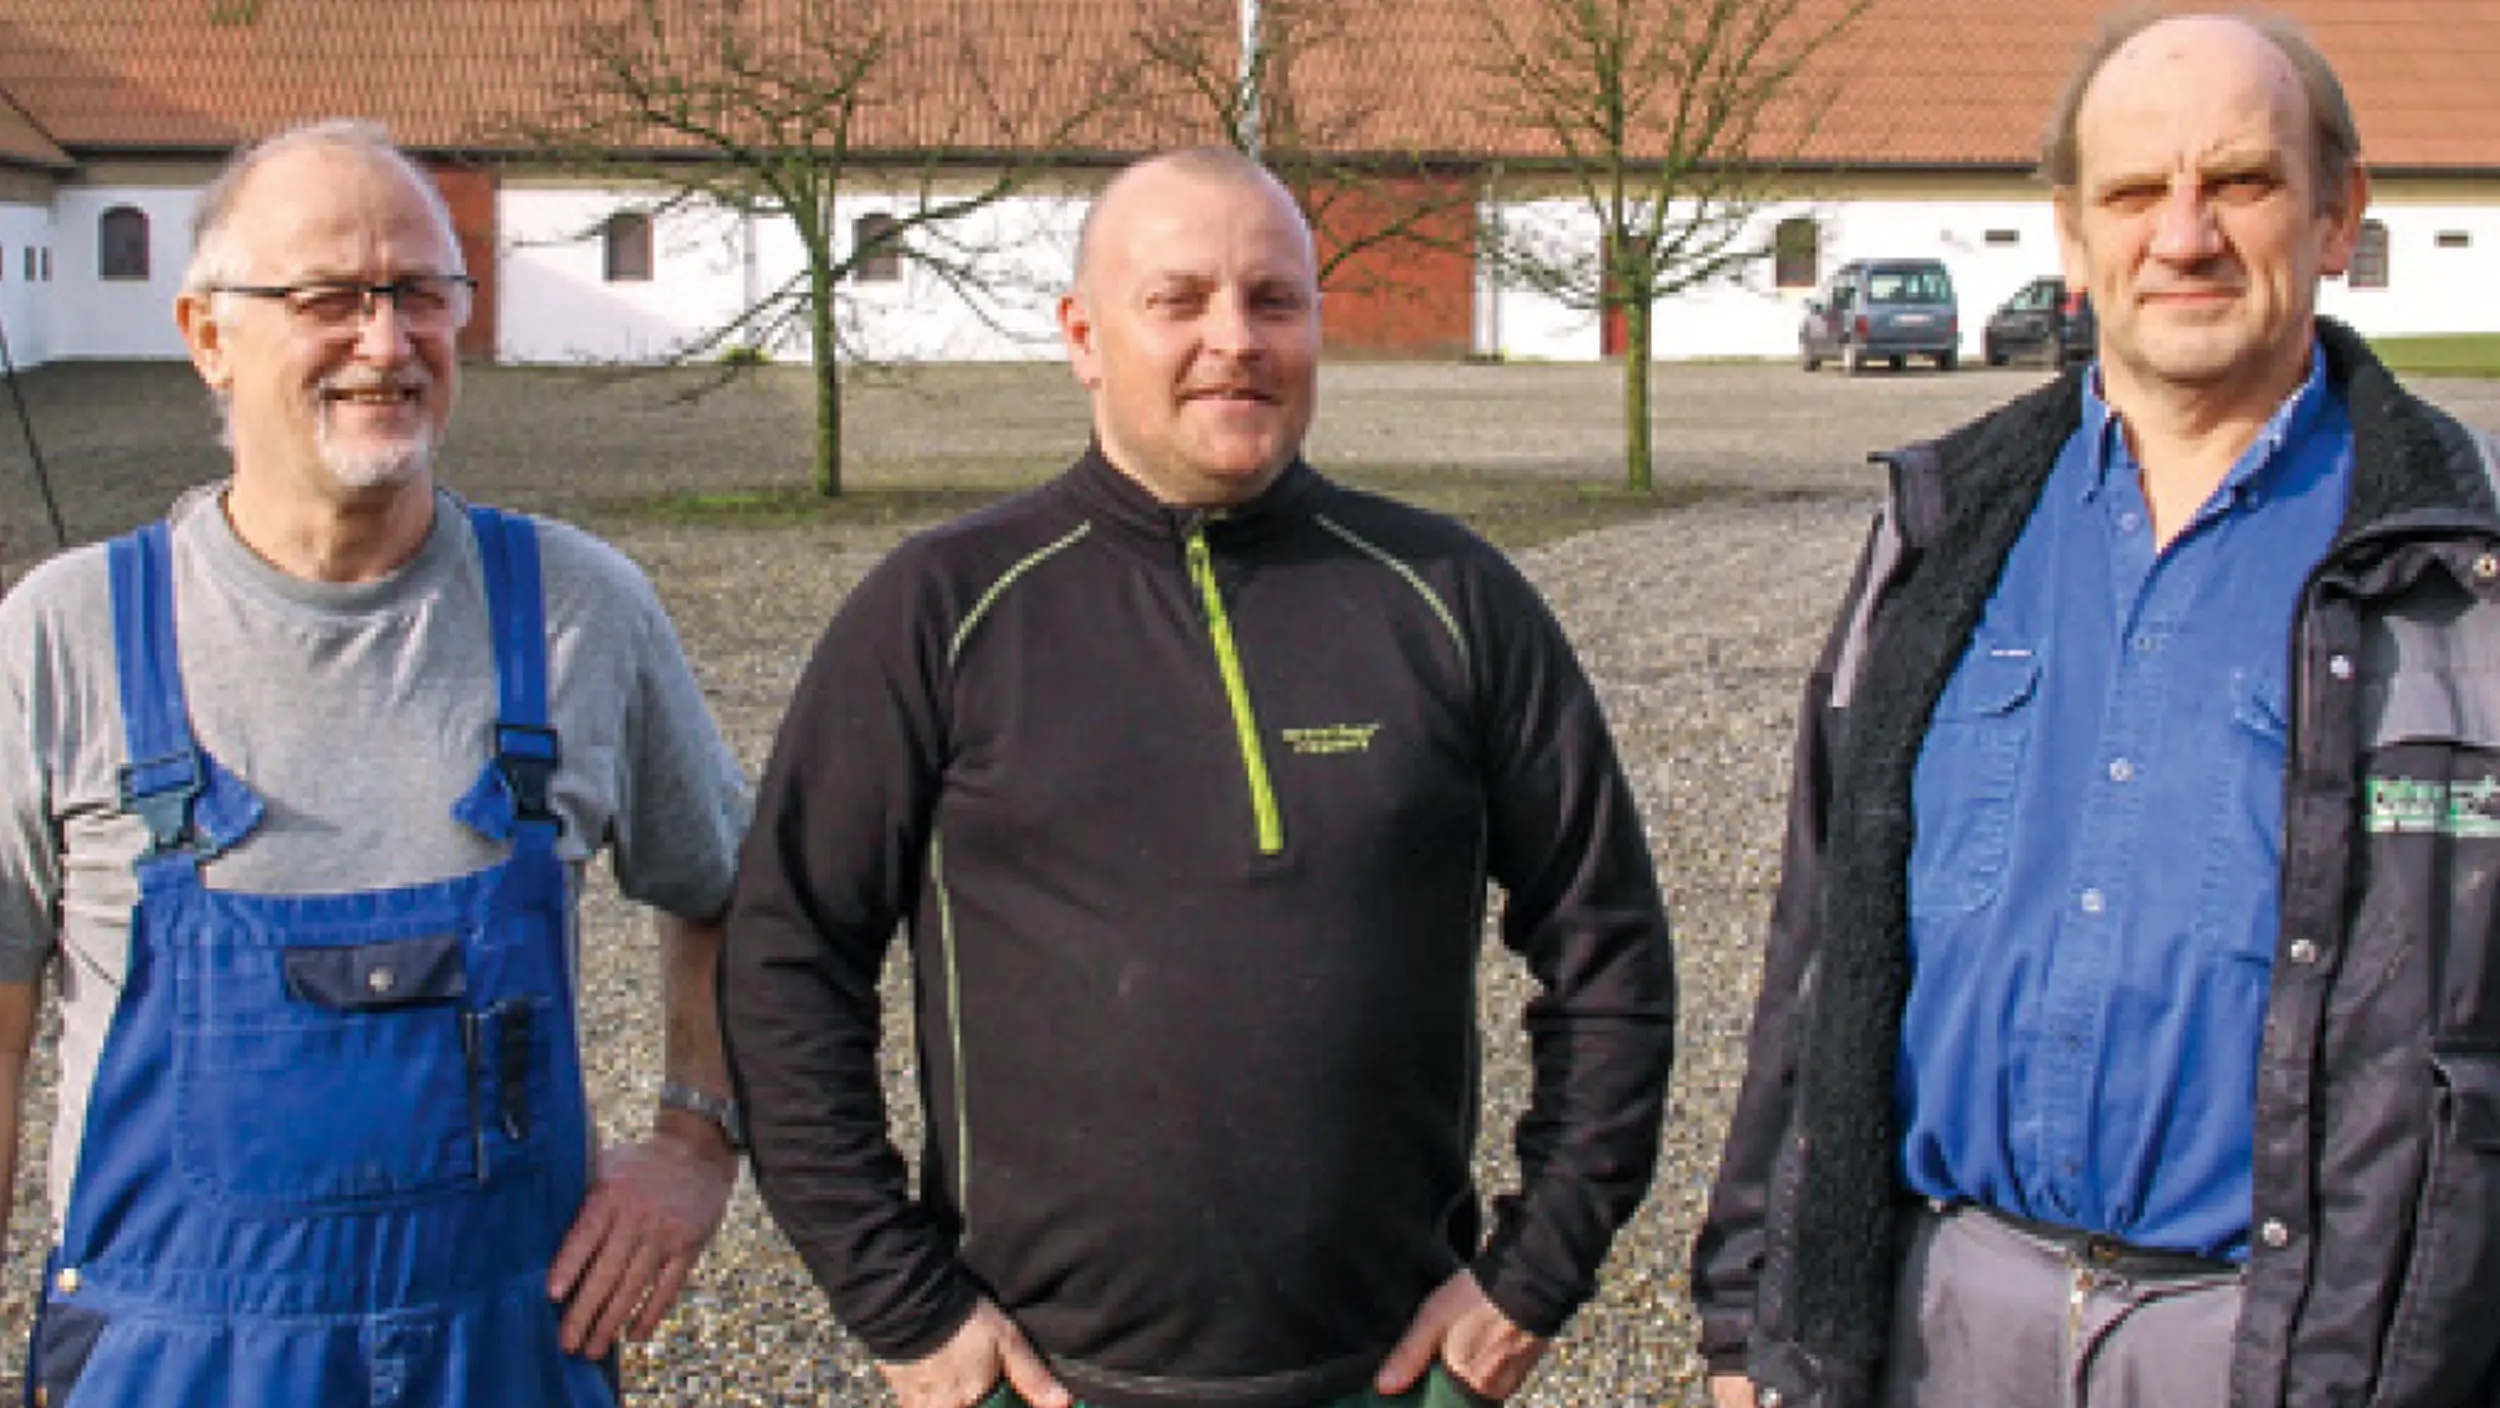 Starkes Team: Die Teilzeitkräfte Svend Jensen (l.) und Bjarne Pedersen (r.) unterstützen den Betriebsleiter im Stall und bei den Außenarbeiten.